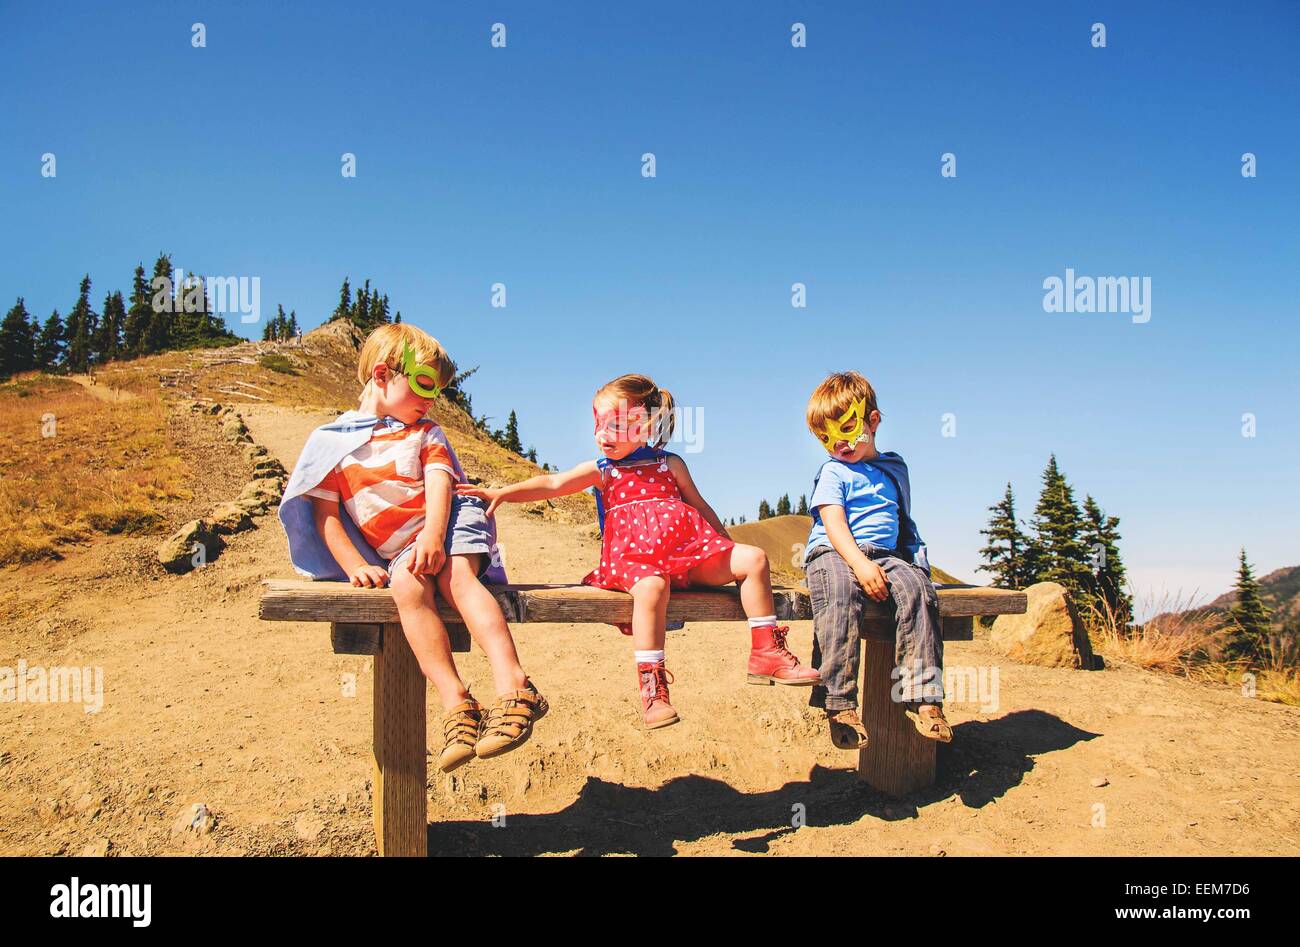 Drei Kinder, die als Superhelden verkleidet auf einer Bank sitzen Stockfoto